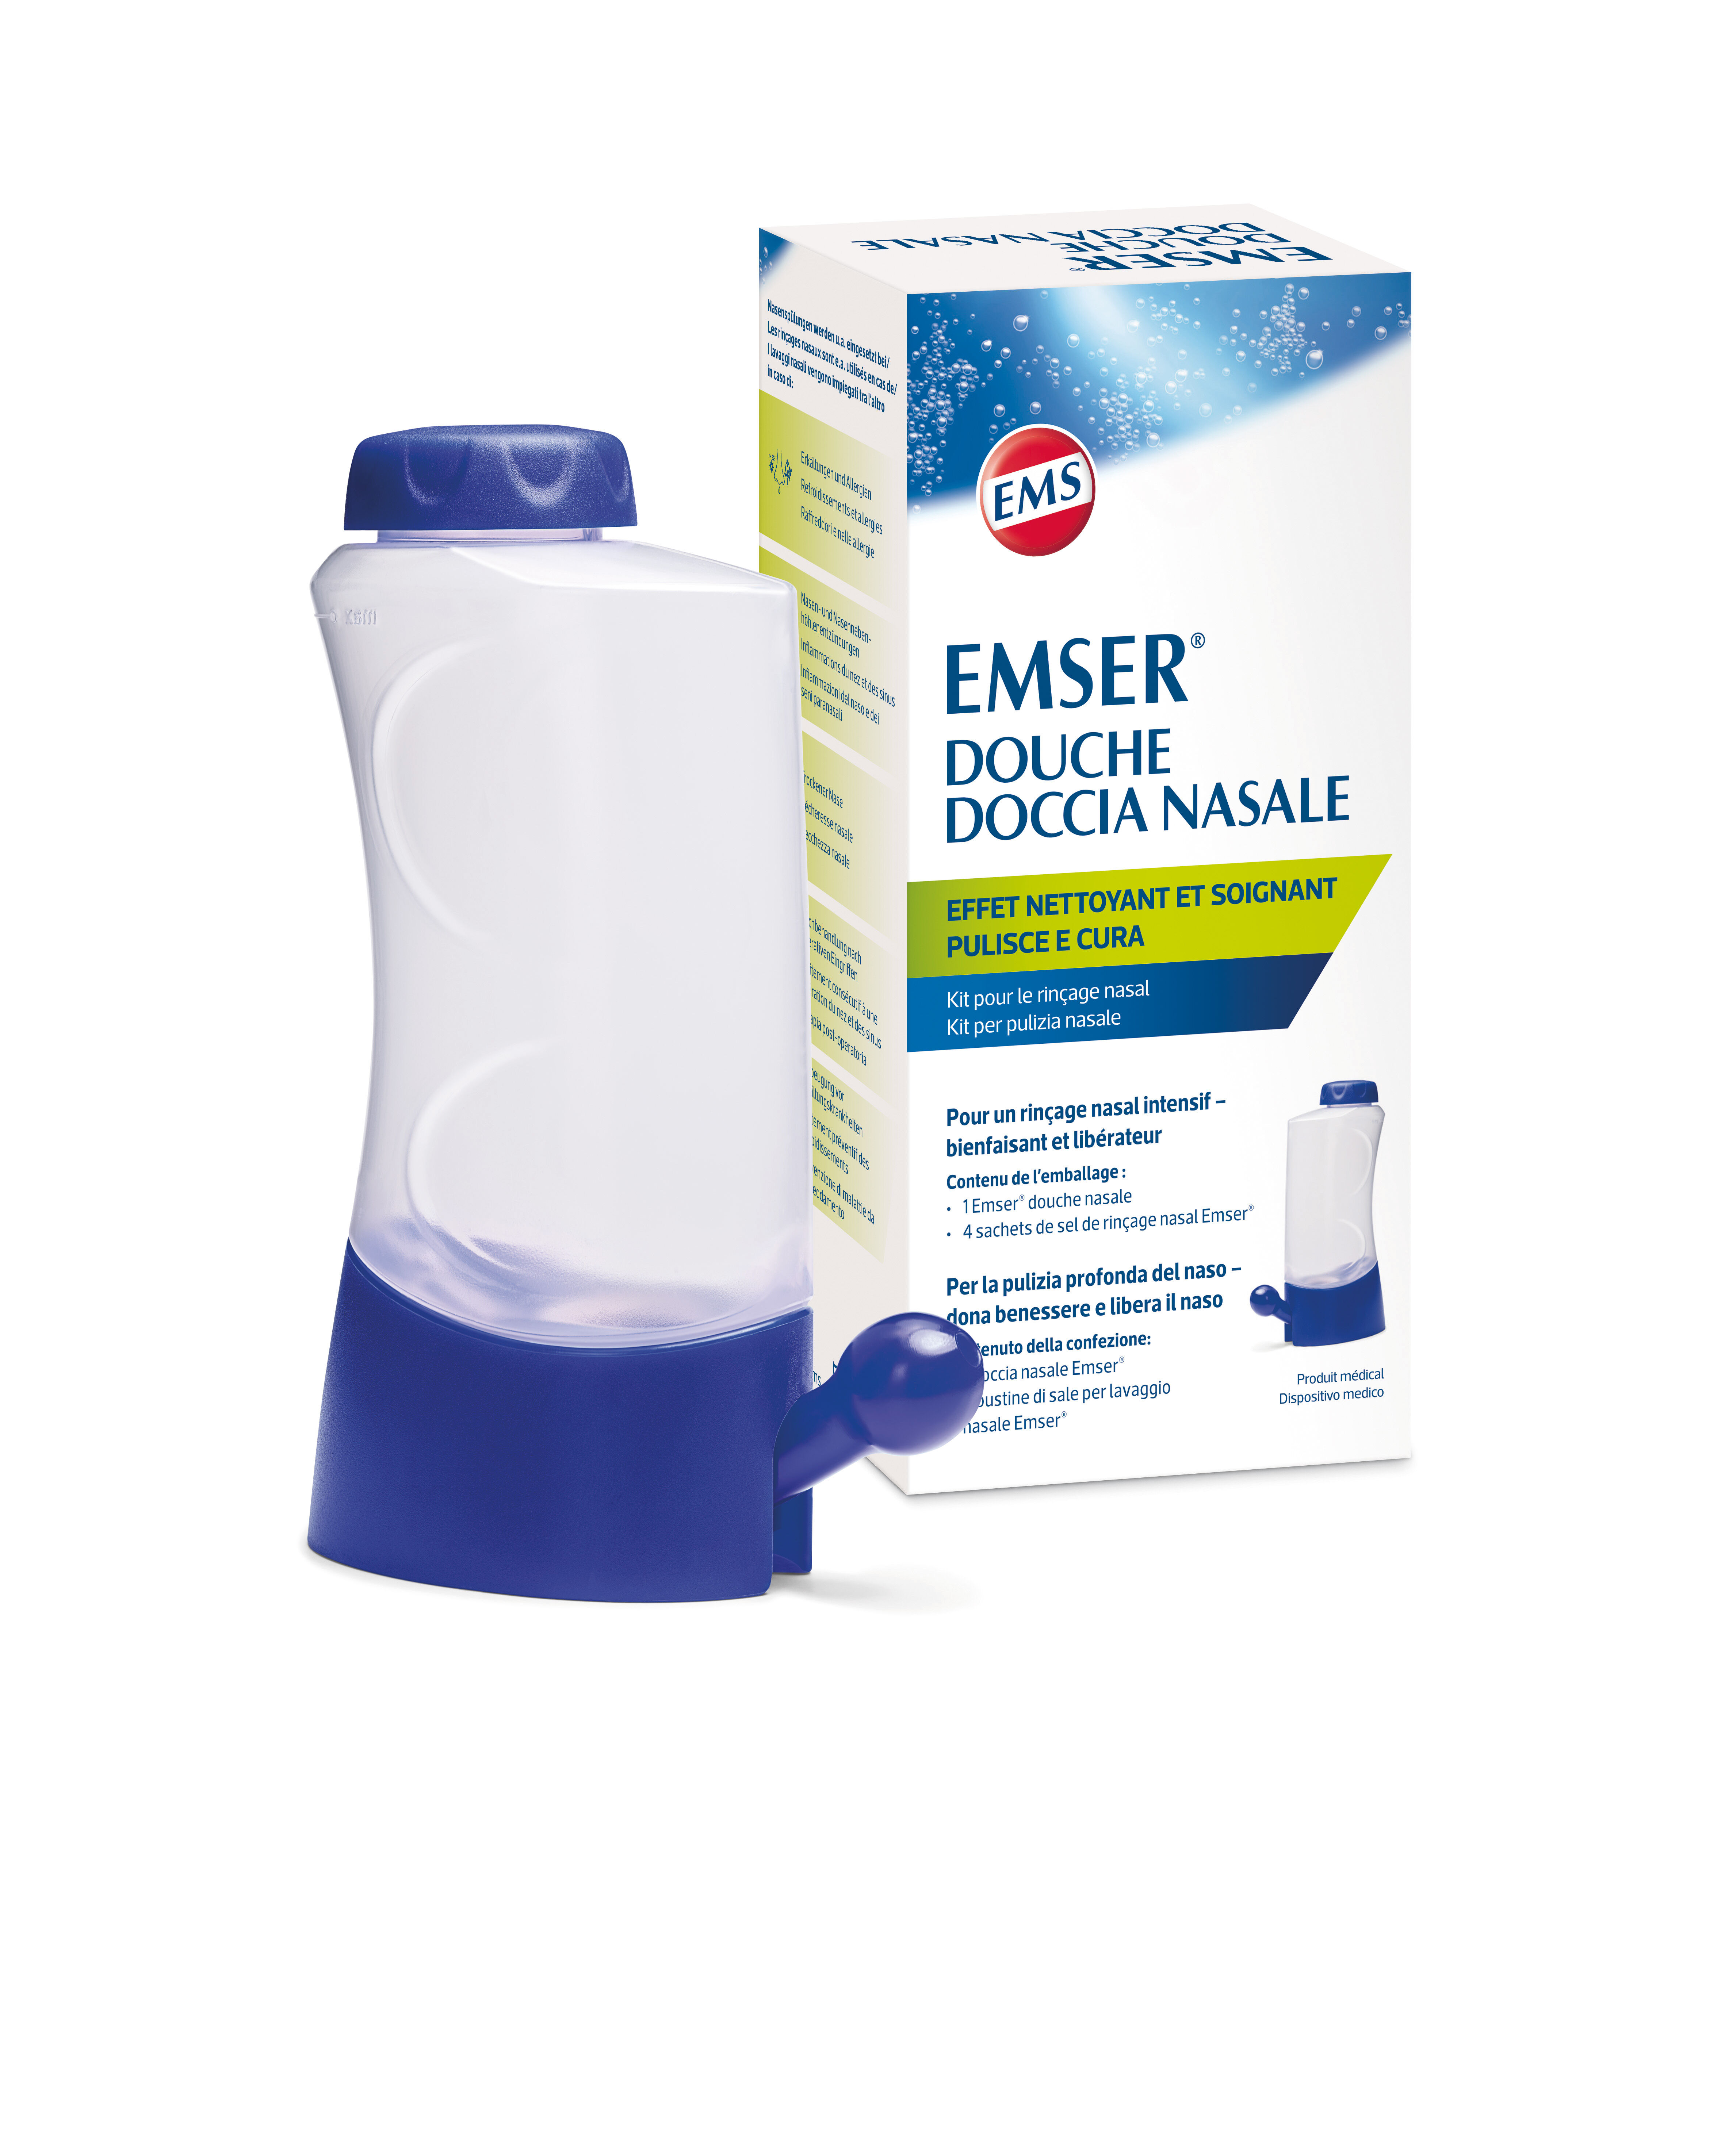 Douche nasale avec sel, après-shampoing Neti Pot Sinus 300 ml avec 10 sels  de rinçage nasal Wash Salt Packets et autocollants th55 - Cdiscount Au  quotidien